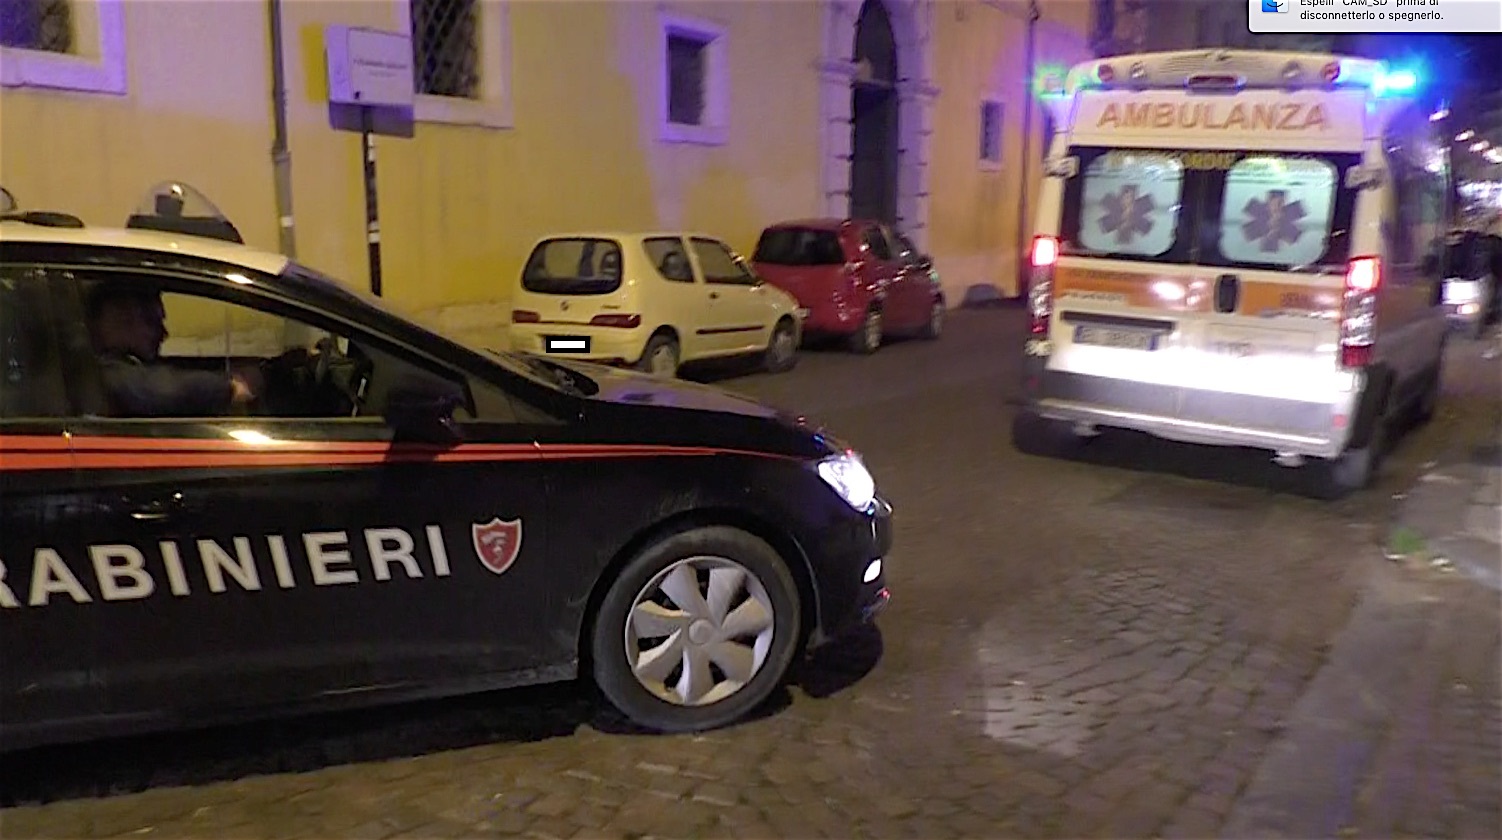 Benevento| Tentata rapina in una tabaccheria di Corso Dante,arrestato 37enne